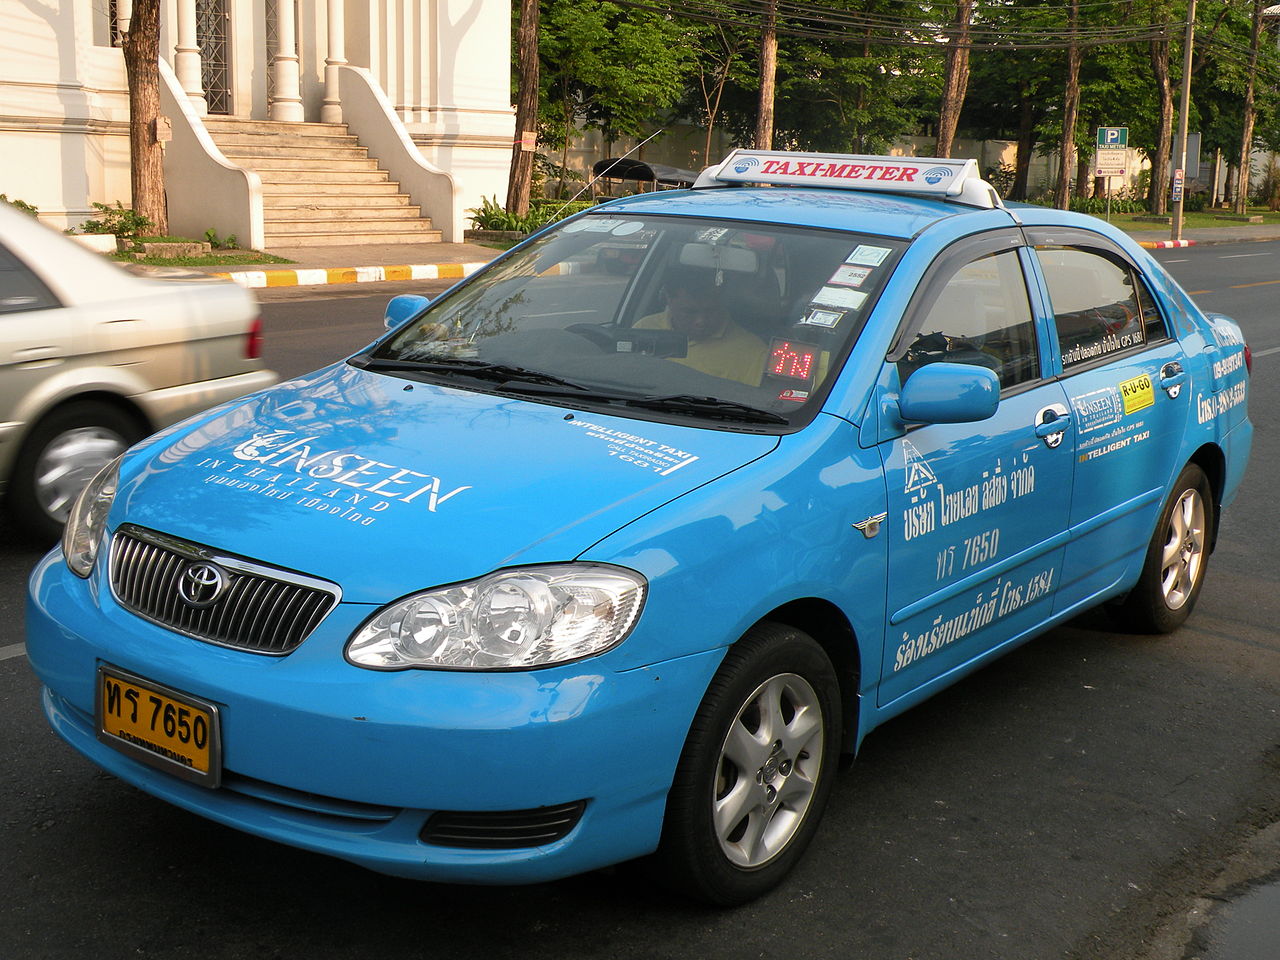 Toyota Corolla Altis blue taxi in Bangkok